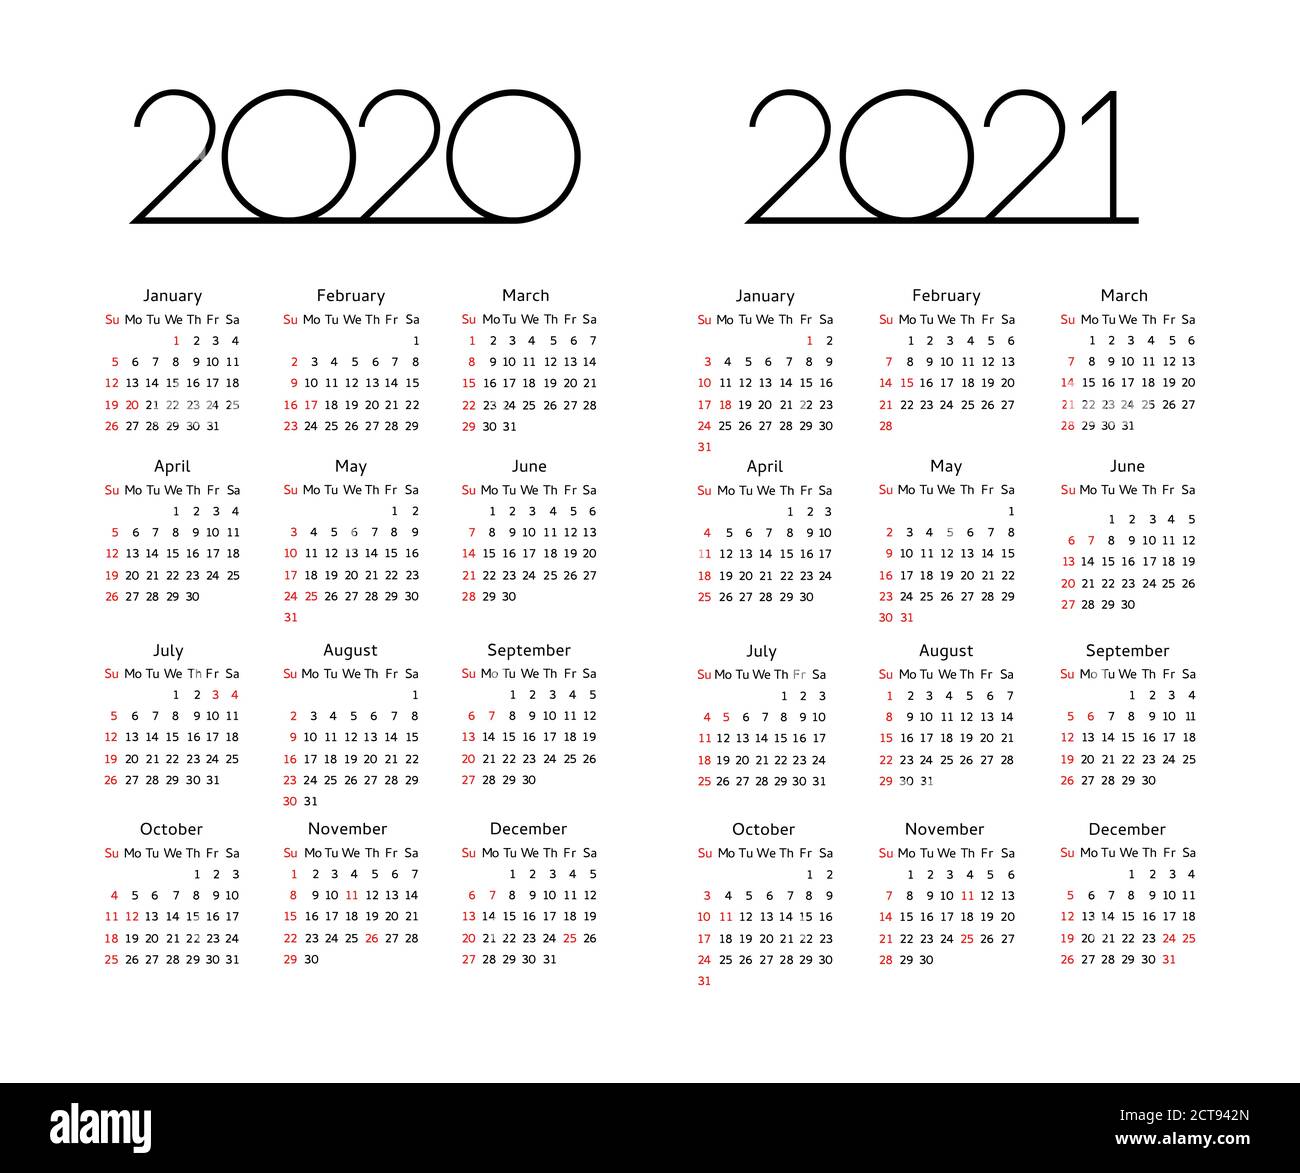 Calendrier 2020 2021 ans - illustration vectorielle. La semaine commence le dimanche. Modèle de calendrier modifiable avec congés USA Illustration de Vecteur